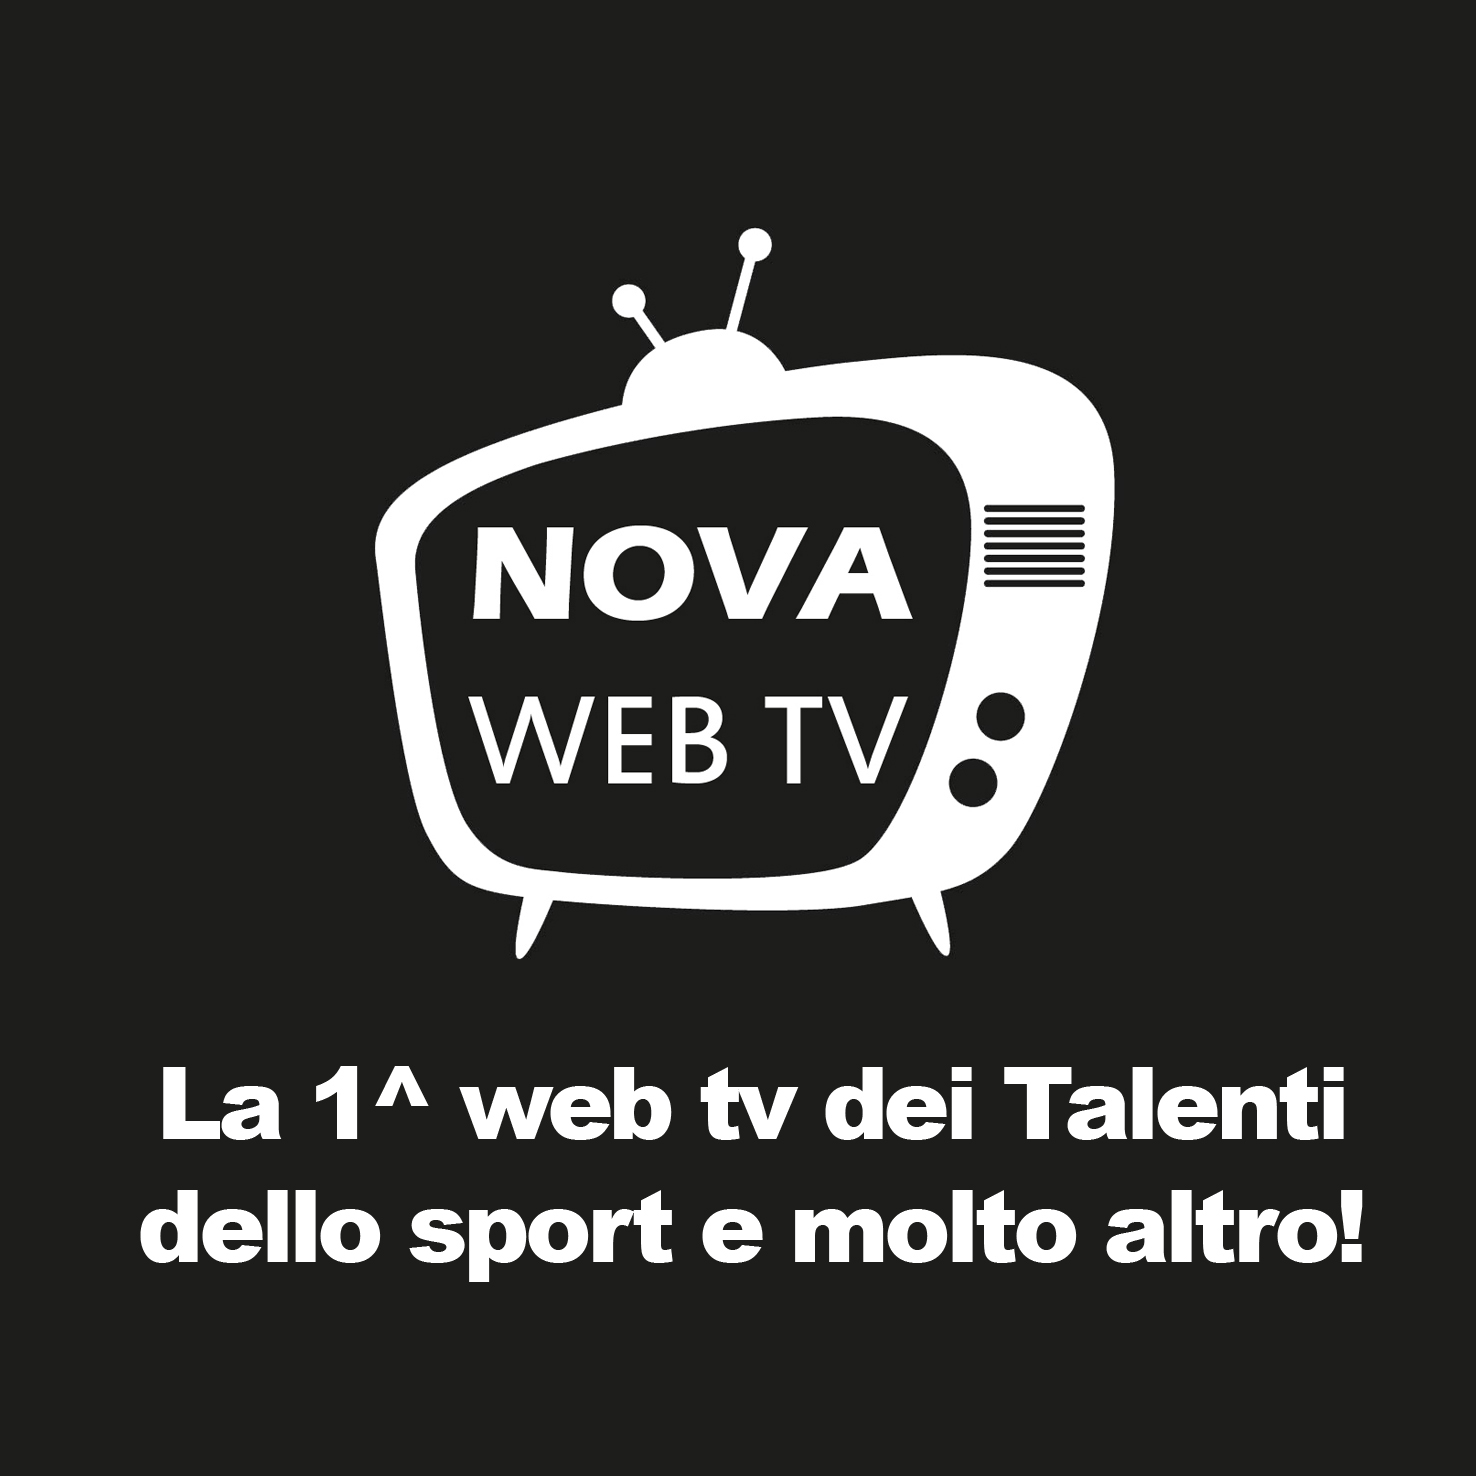 Nova Web TV